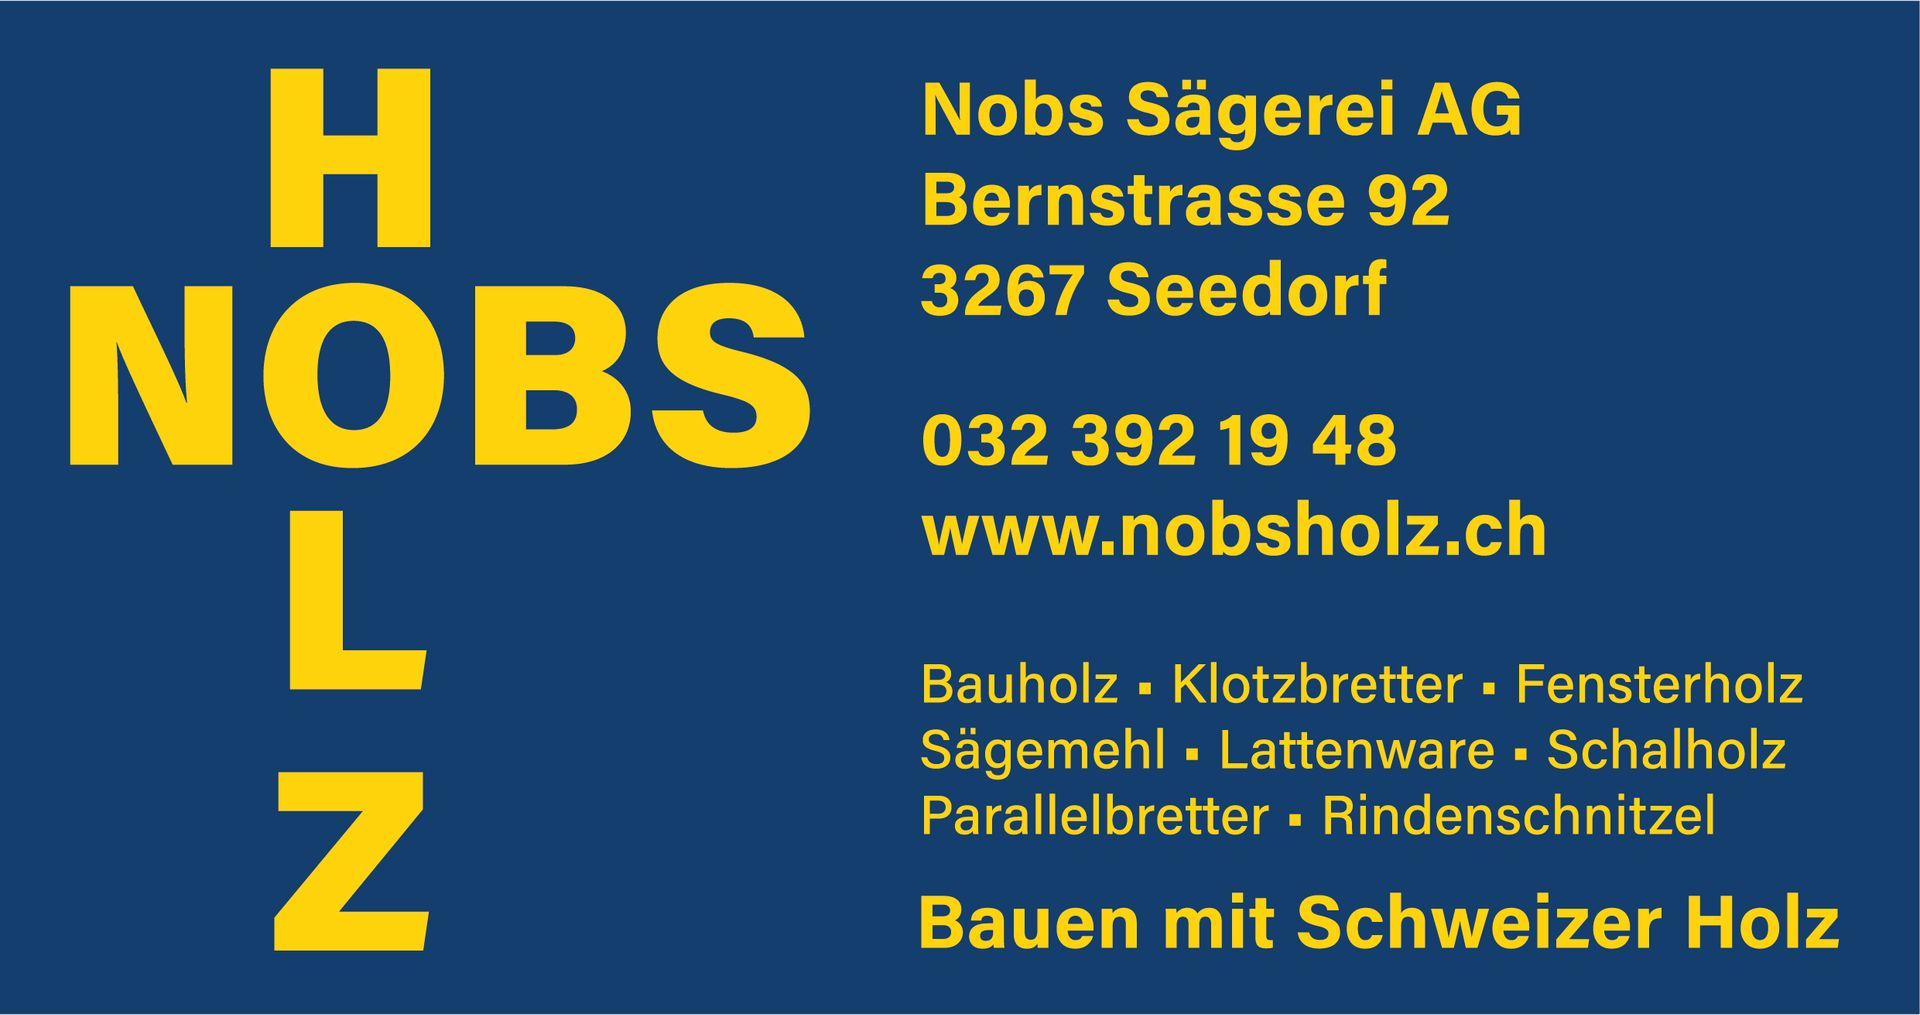 Nobs Sägerei AG logo